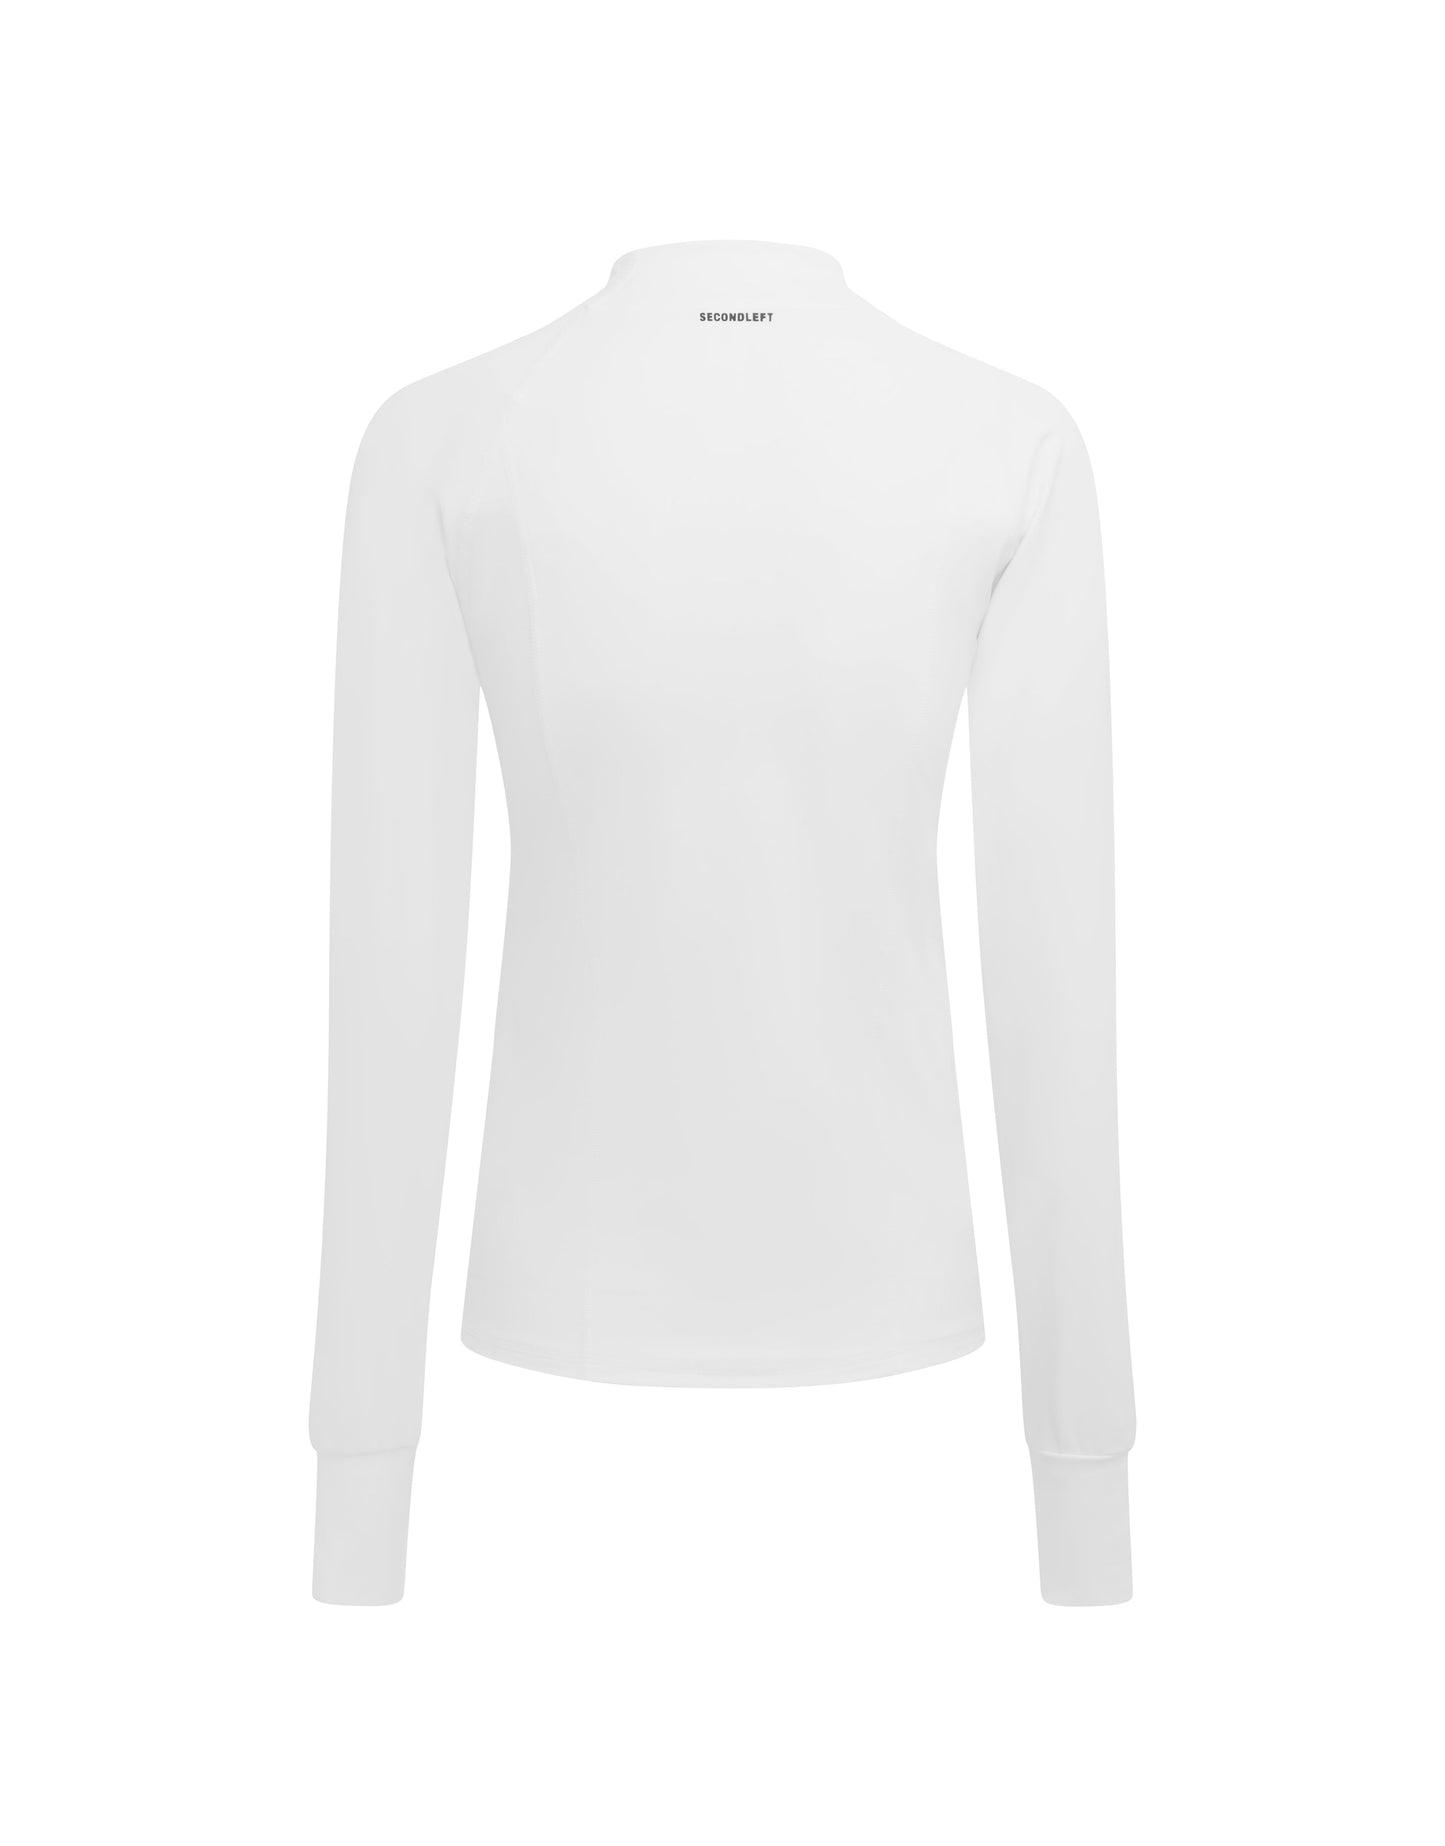 Sport Jacket NANDEX™ - White